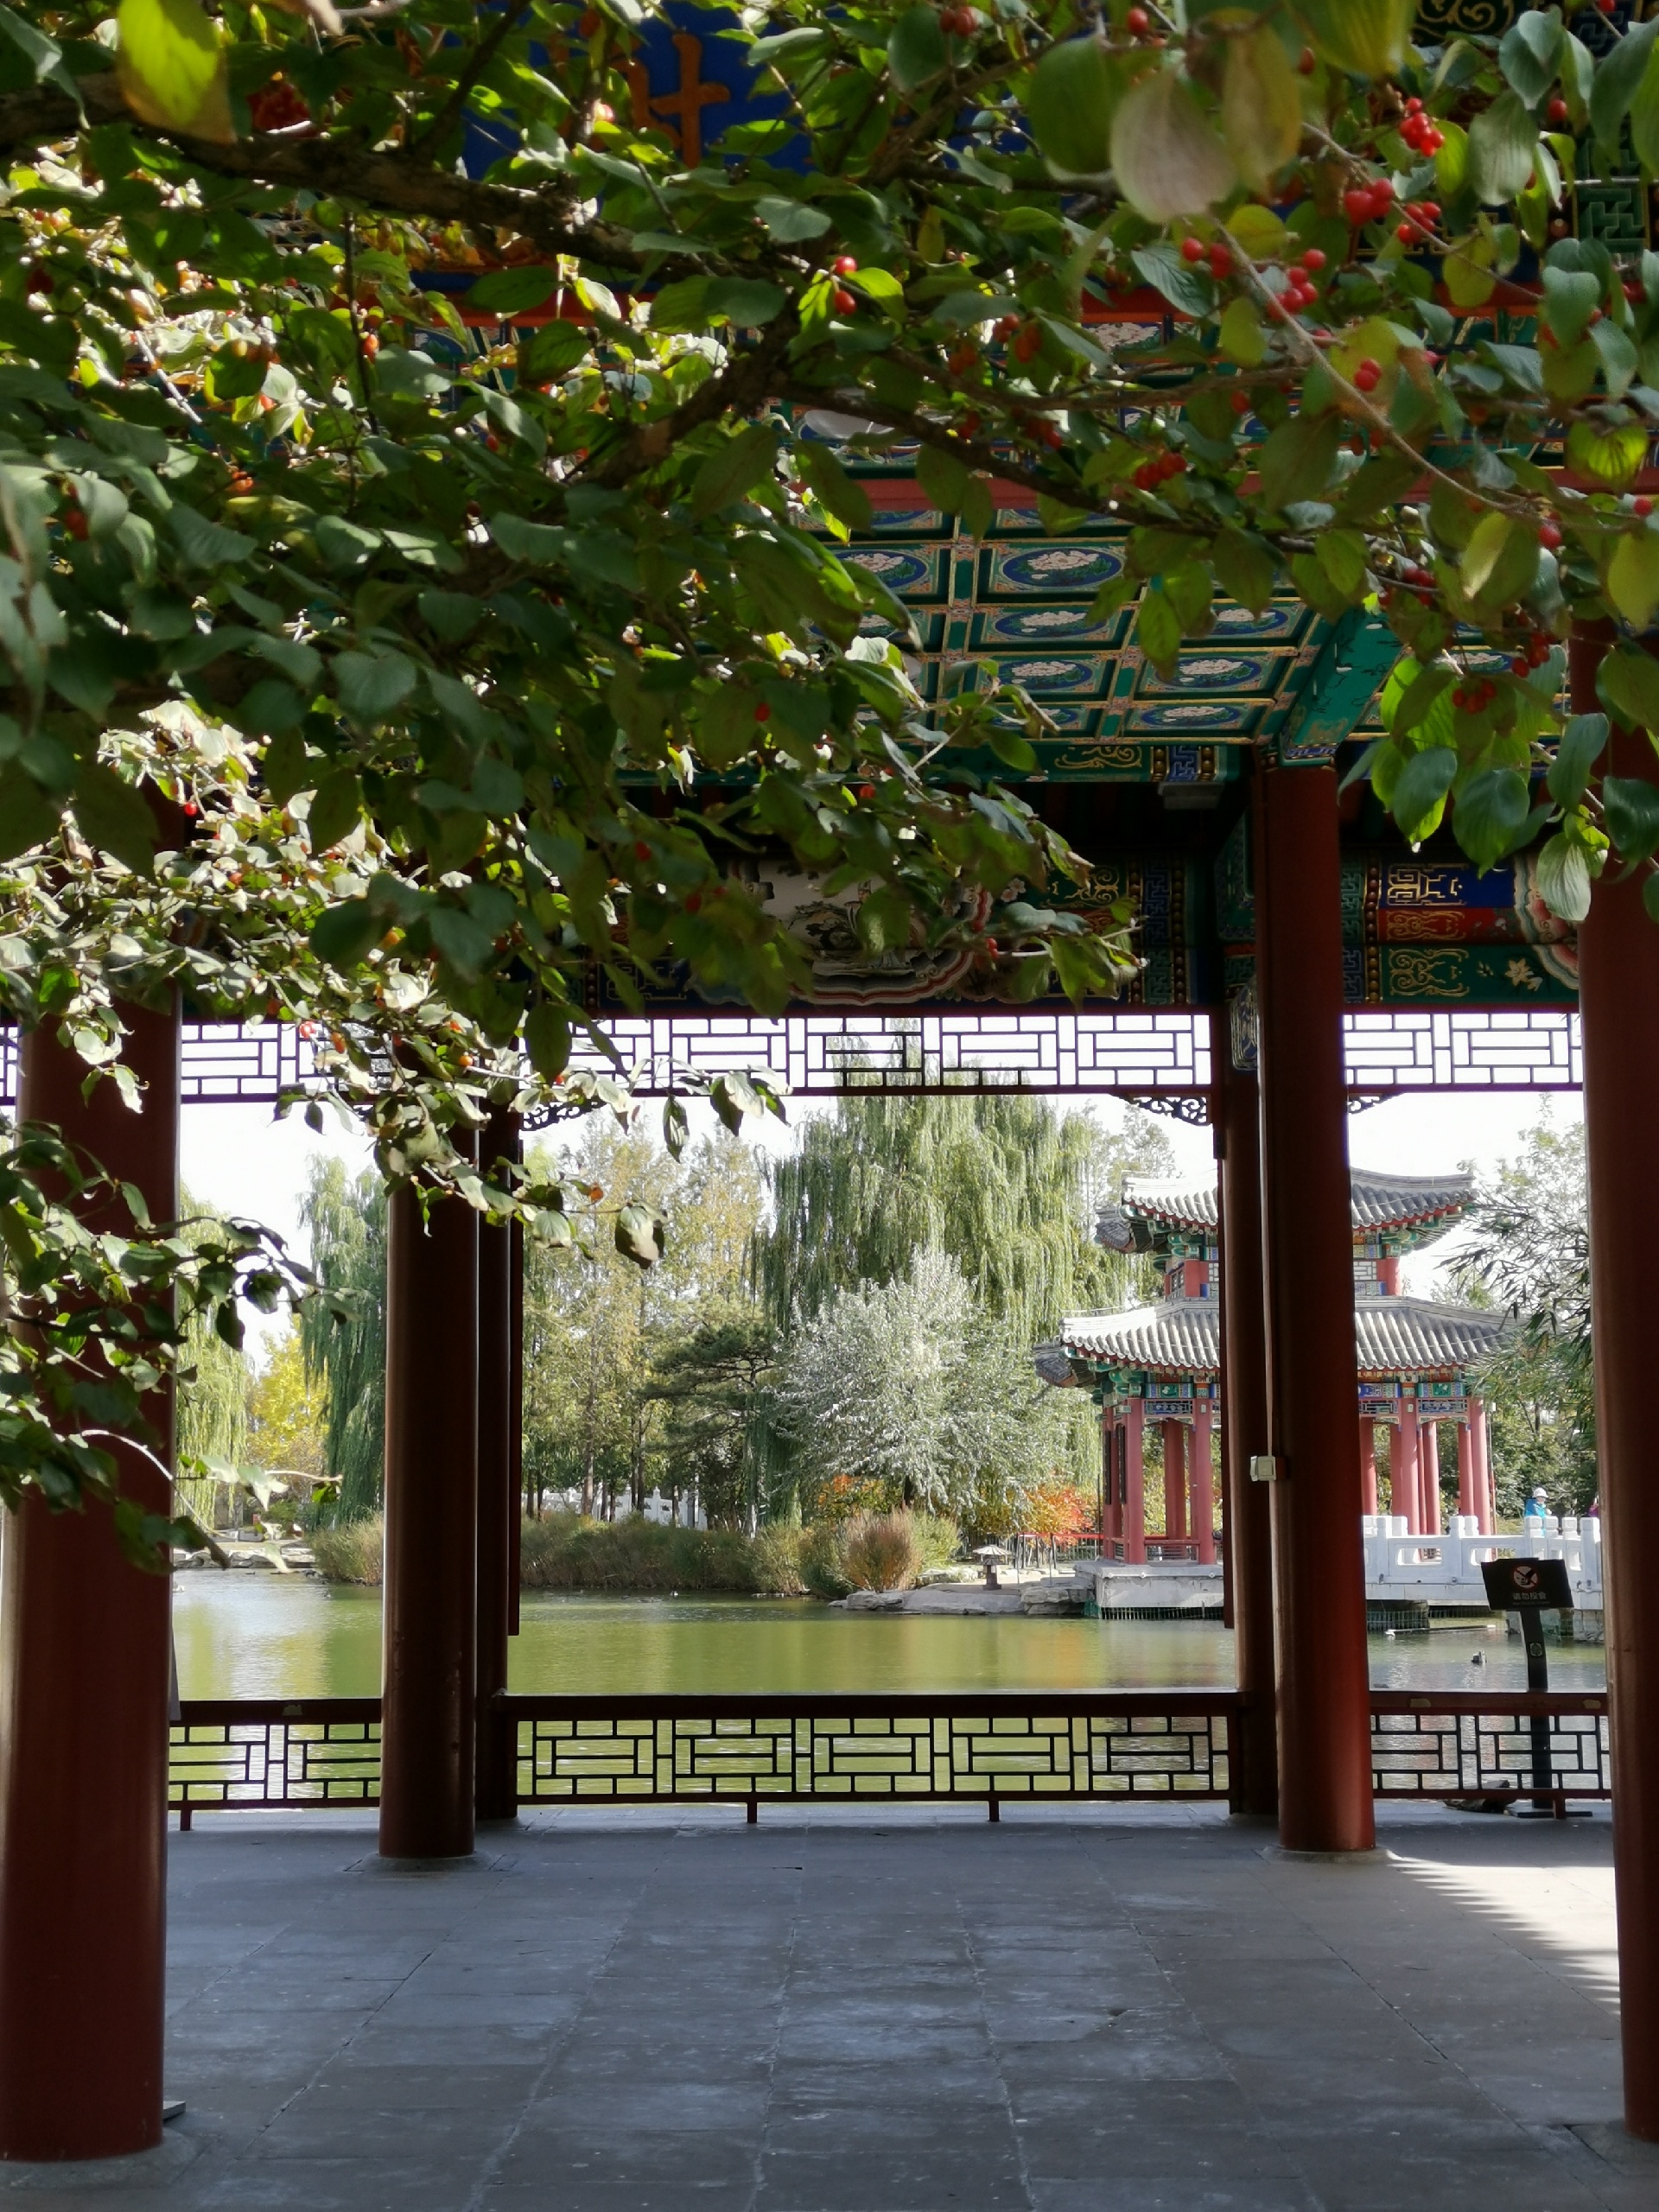 中国园林博物馆-停车场免费，需要关注公众号预约，有室内和室外